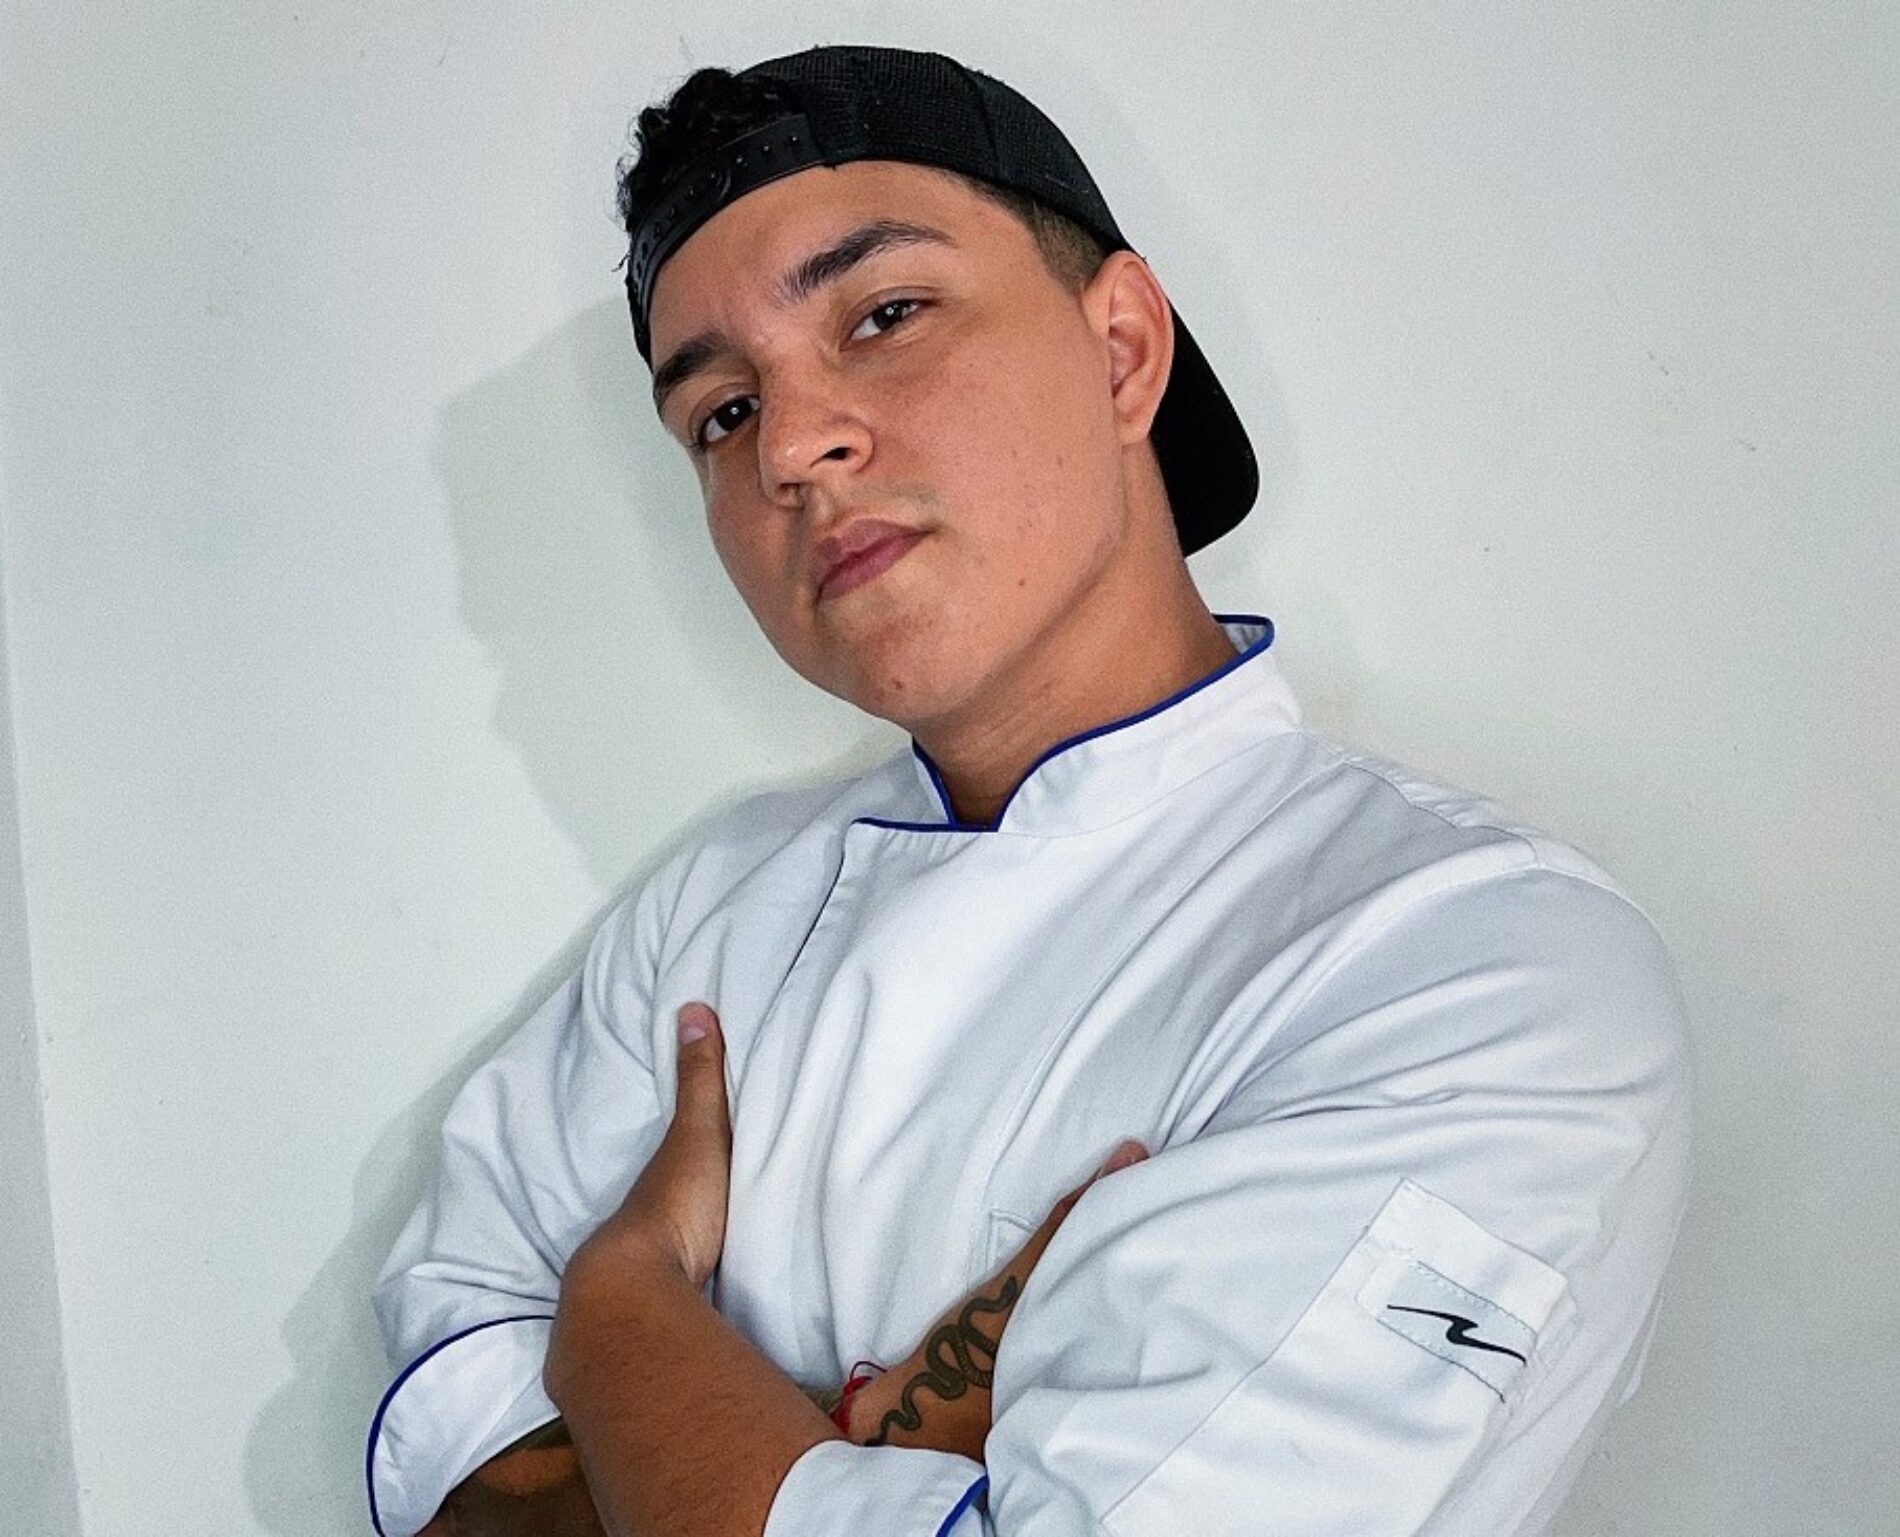 Cocinero caleño es la sensación en Kwai por su sazón y sus videos de recetas